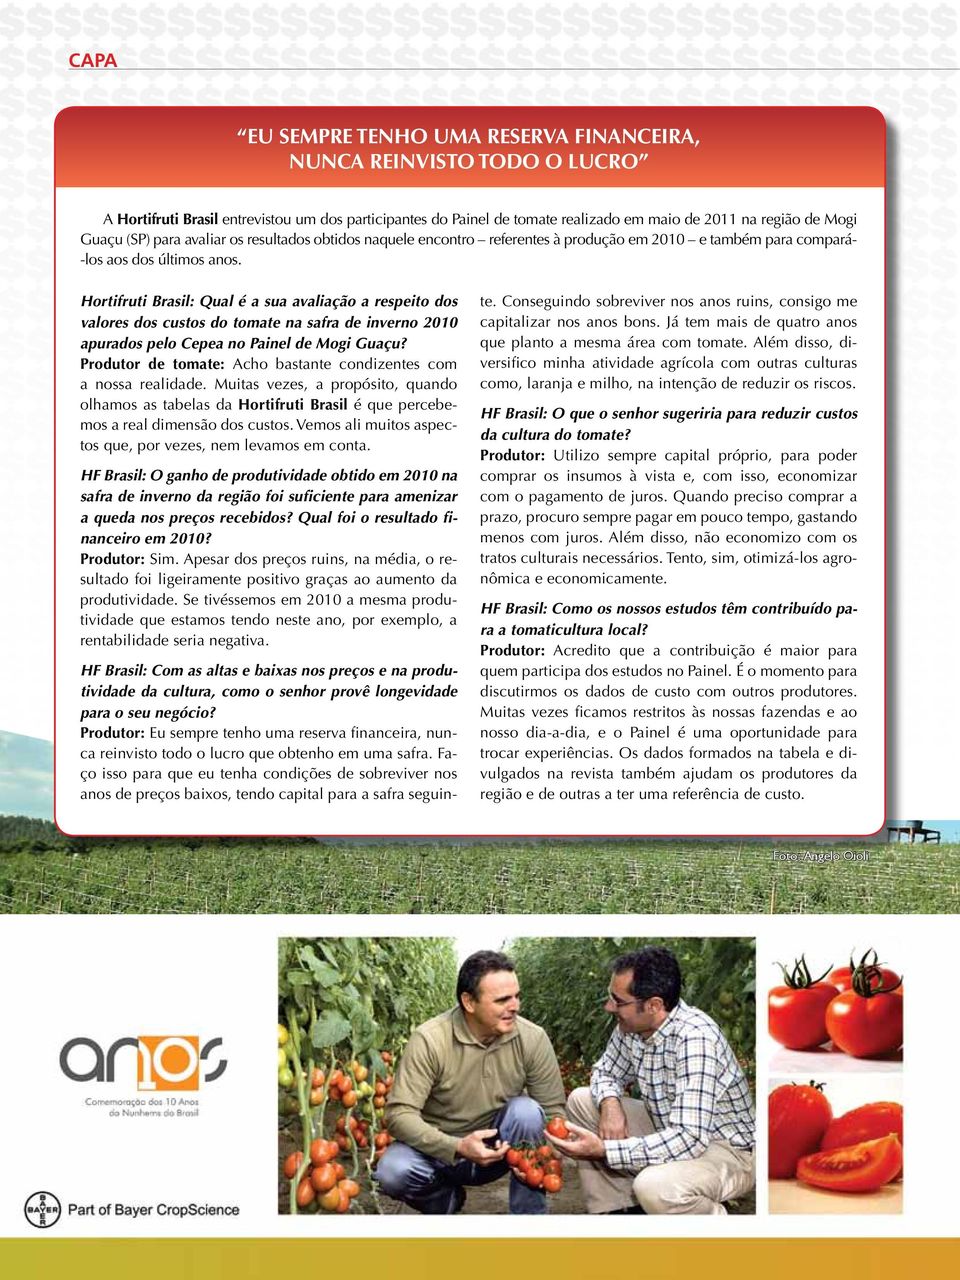 Hortifruti Brasil: Qual é a sua avaliação a respeito dos valores dos custos do tomate na safra de inverno 2010 apurados pelo Cepea no Painel de Mogi Guaçu?